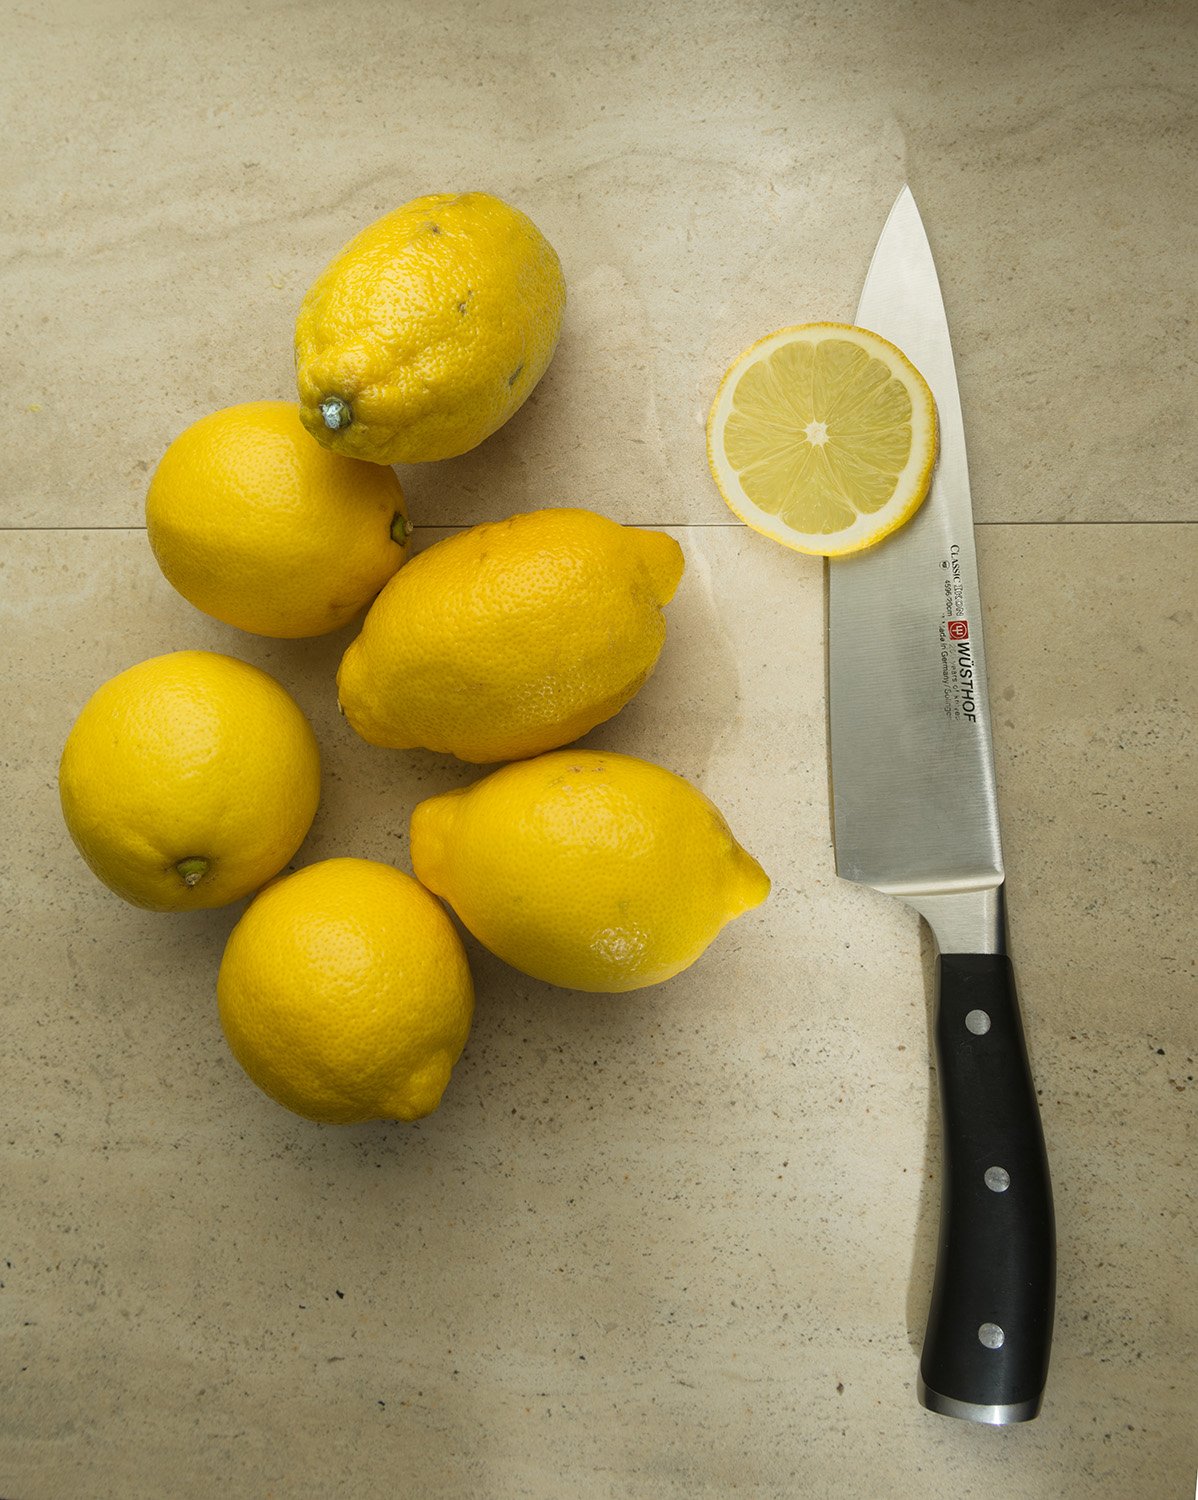 Slice of Lemon